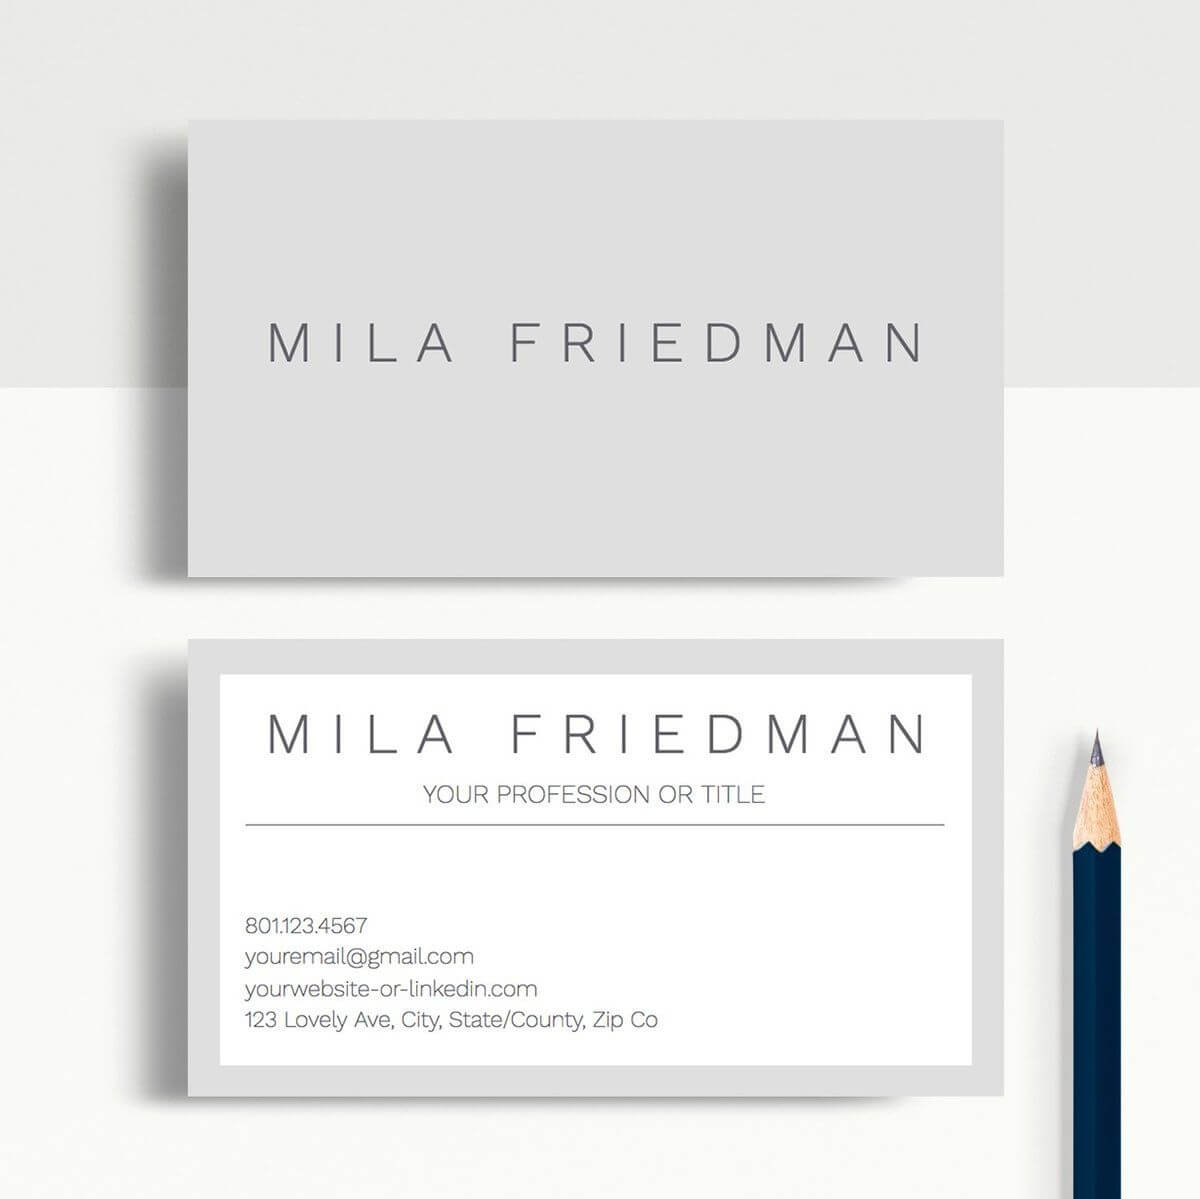 Mila Friedman | Google Docs Professional Business Cards Pertaining To Google Docs Business Card Template